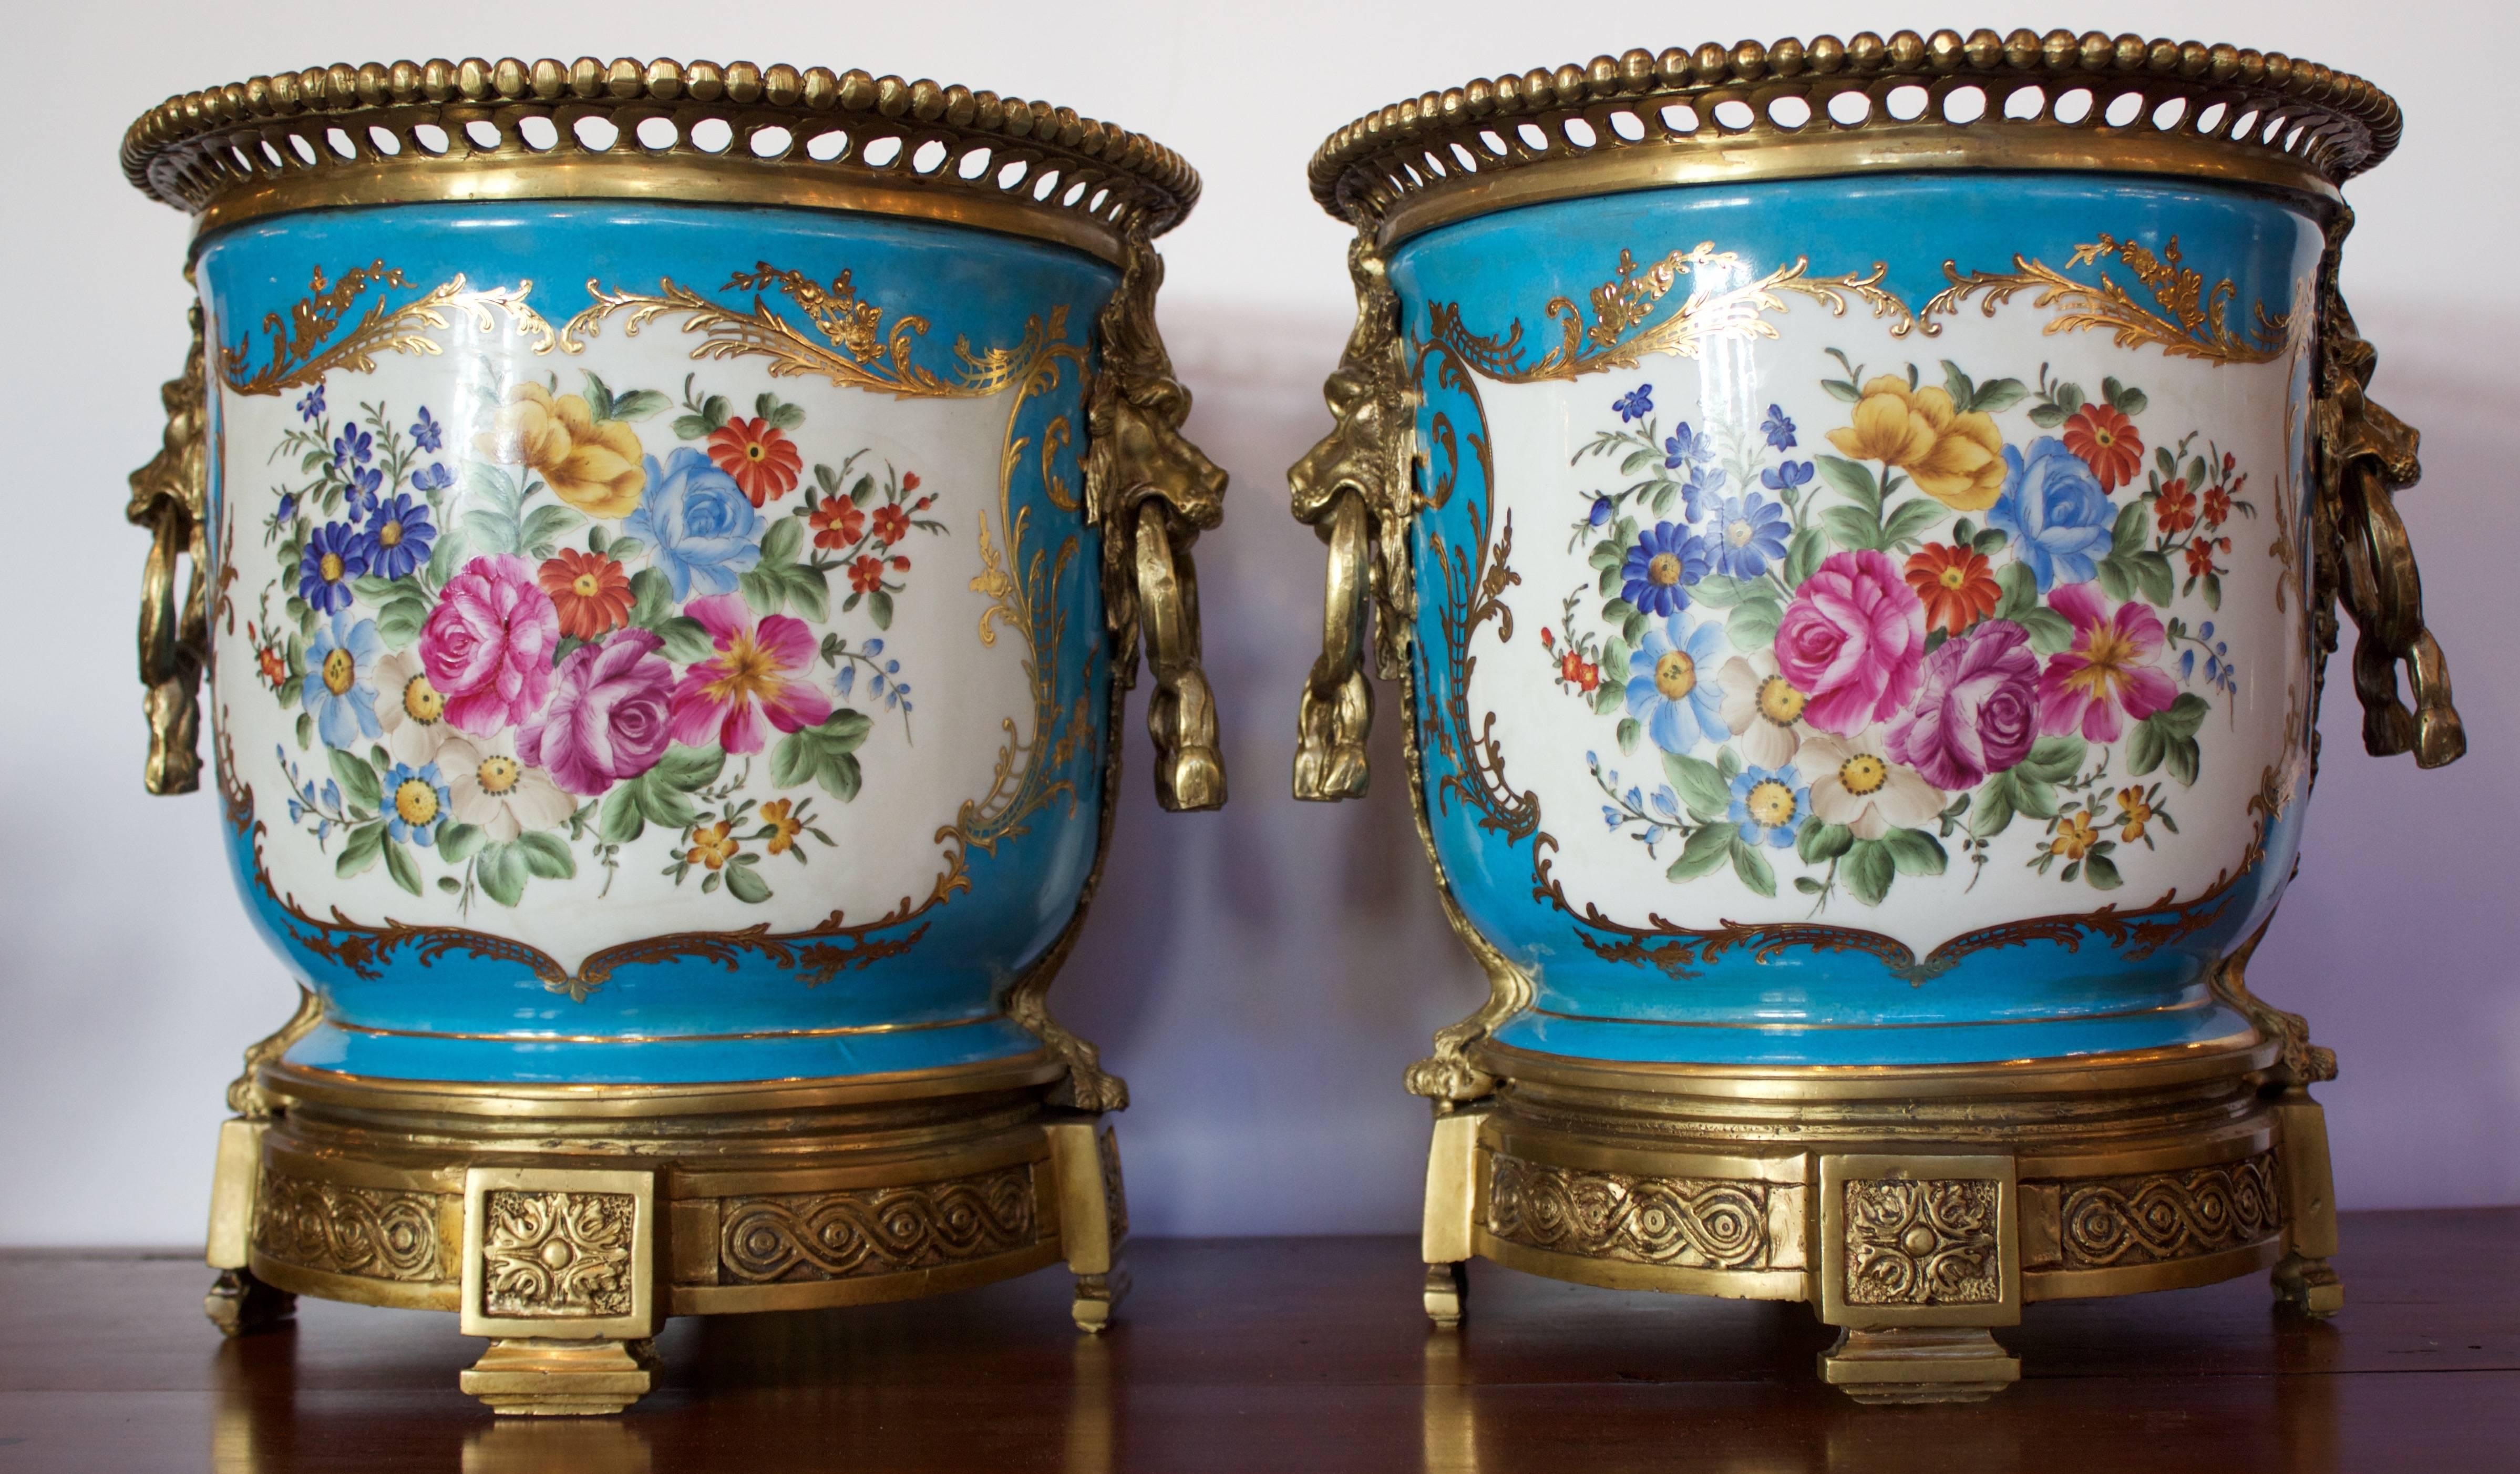 Fine Porcelain small pedestal vases in 